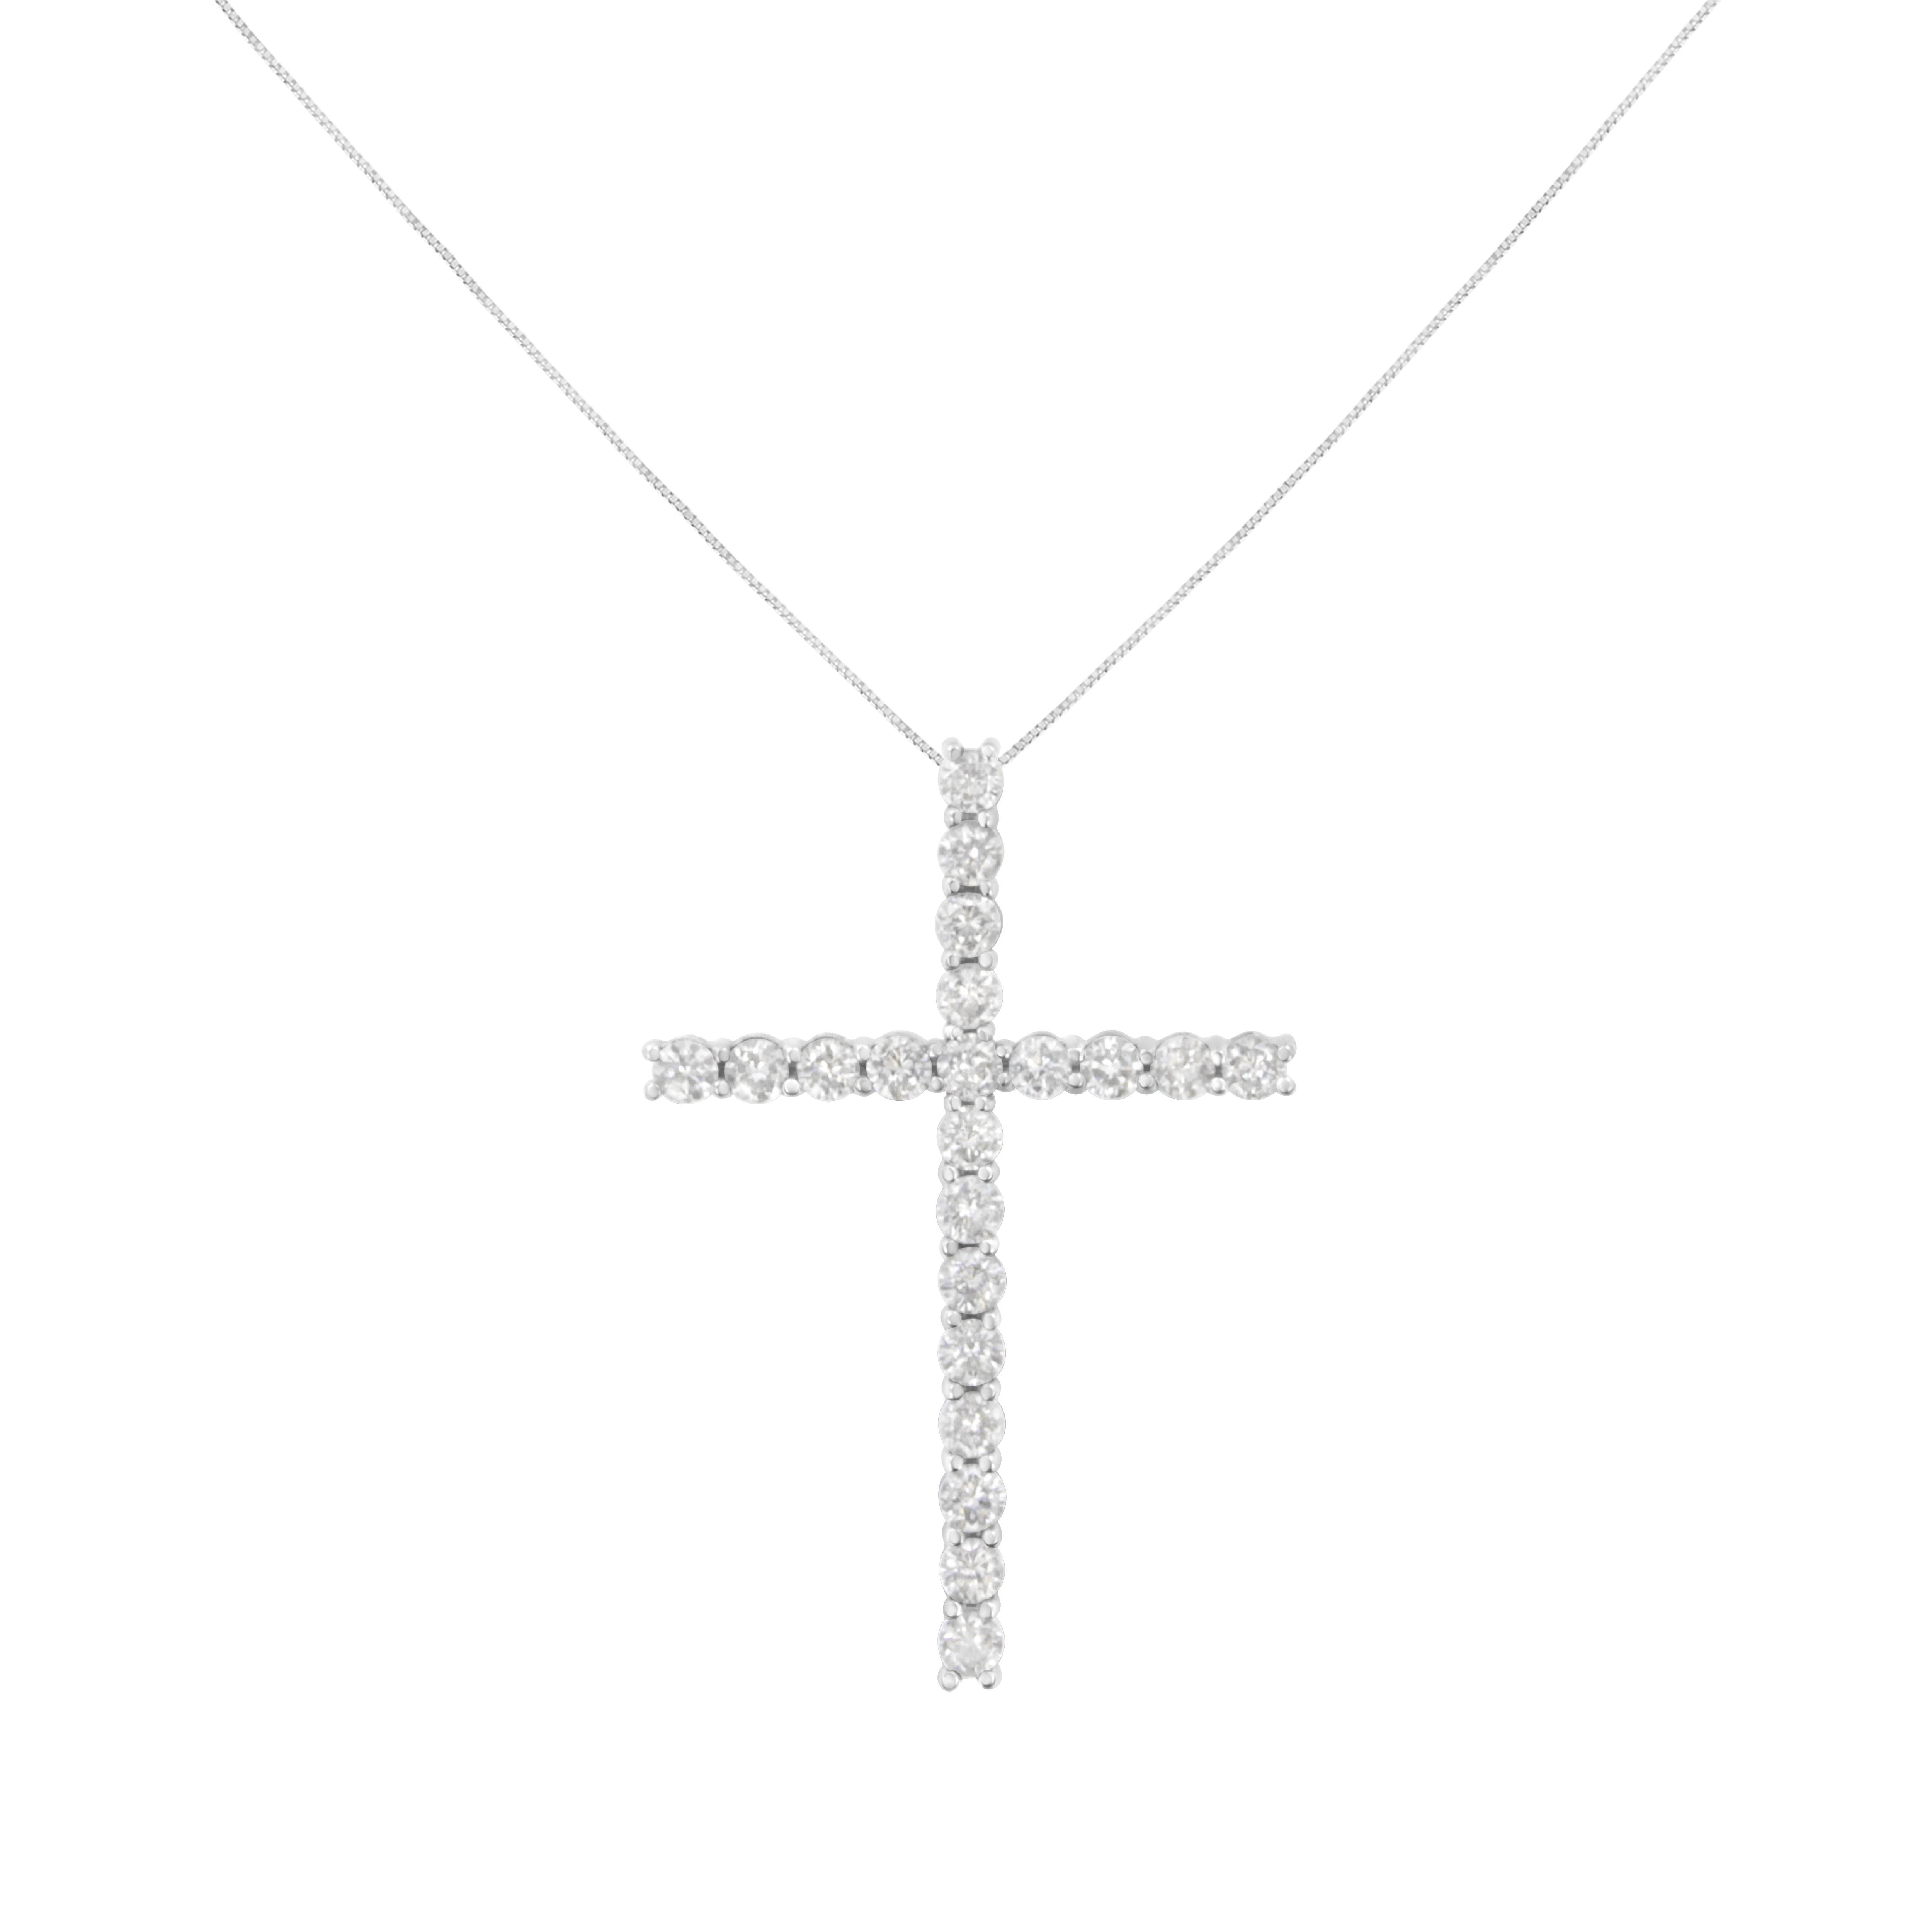 Lassen Sie Ihren Glauben durchscheinen mit diesem atemberaubenden Kreuzanhänger aus Sterlingsilber. Dieser elegante Glaubensbeweis besteht aus 21 natürlichen Diamanten im Rundschliff in einer Zackenfassung. Kommt mit einer 18-Zoll-Box-Kette mit